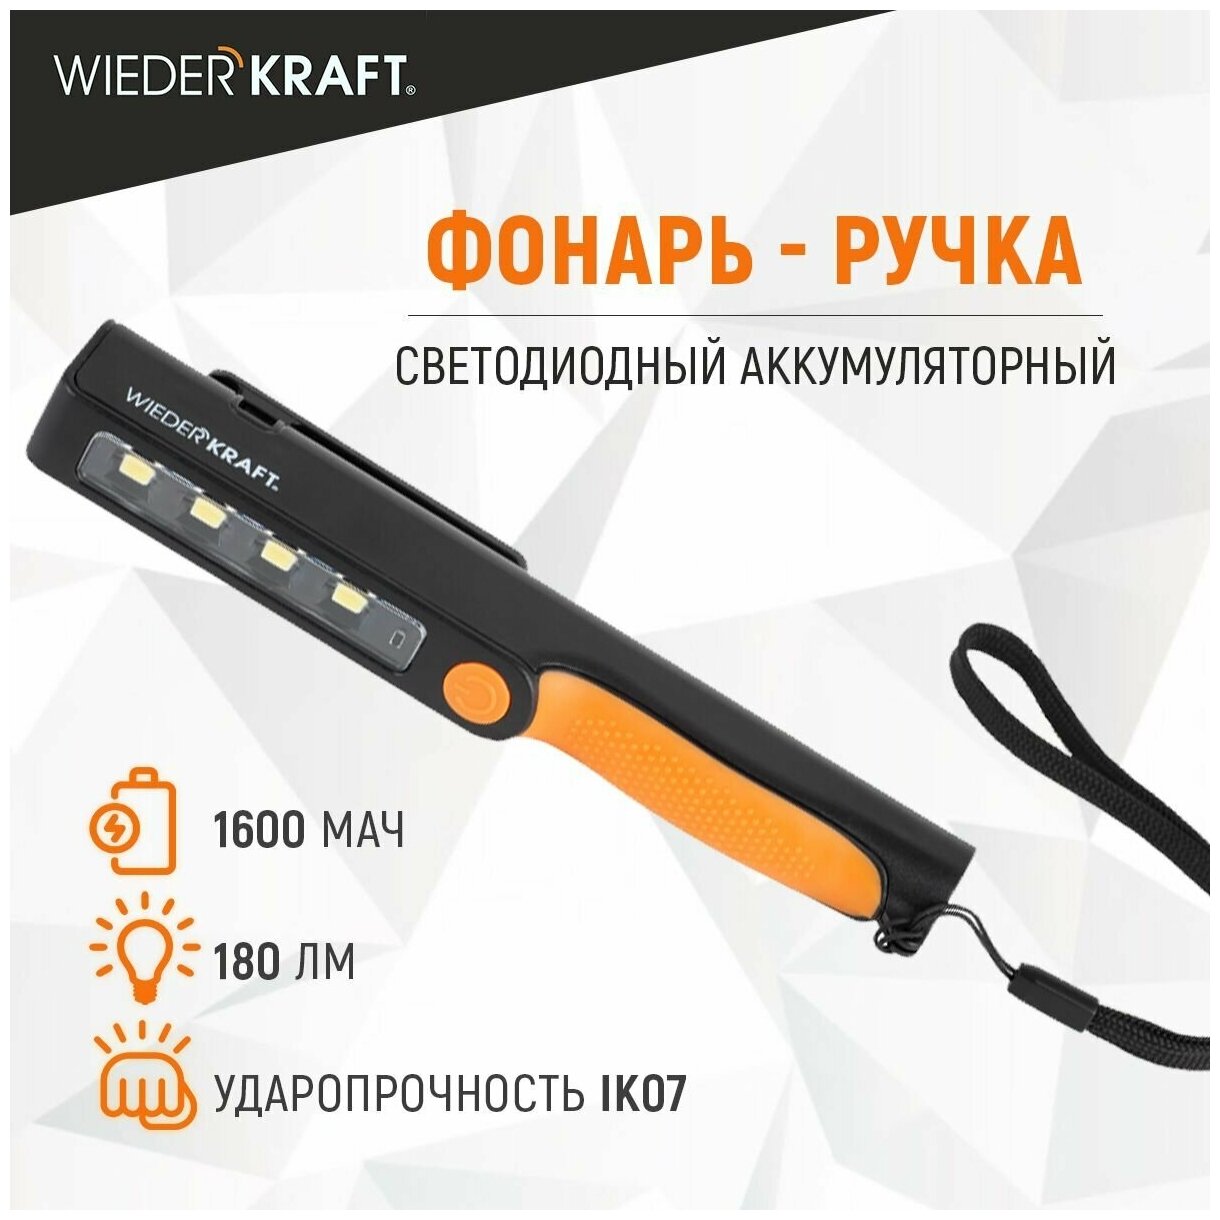 Фонарь-ручка светодиодный аккумуляторный, 180 Лм WIEDERKRAFT WDK-1054004